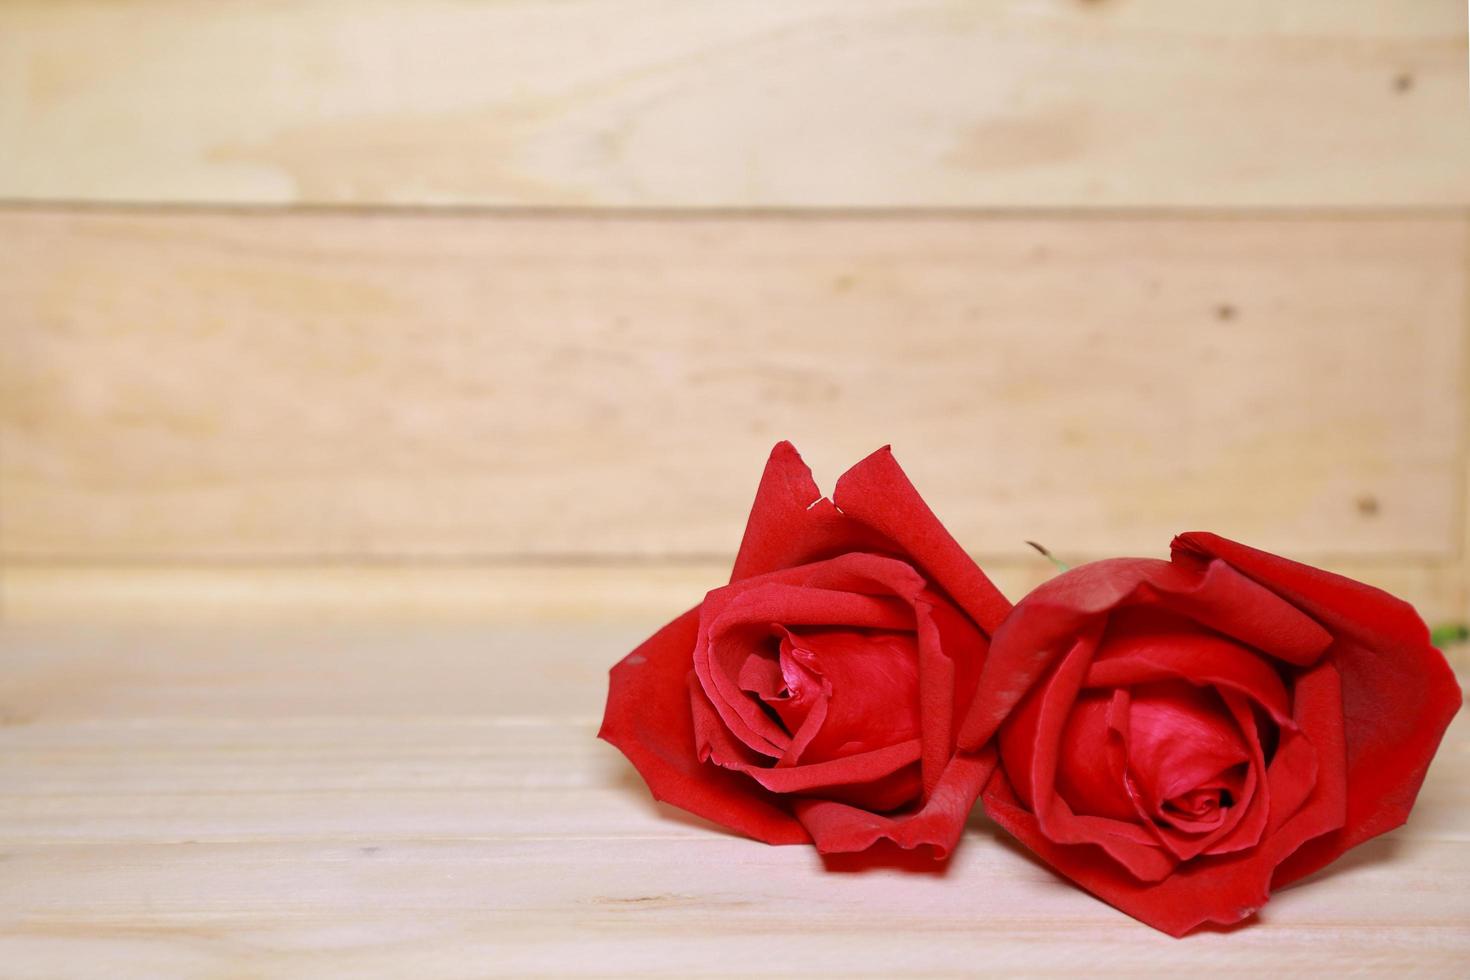 design belle rose rosse su vecchio fondo di legno invecchiato. concetto di San Valentino. spazio per il testo. foto